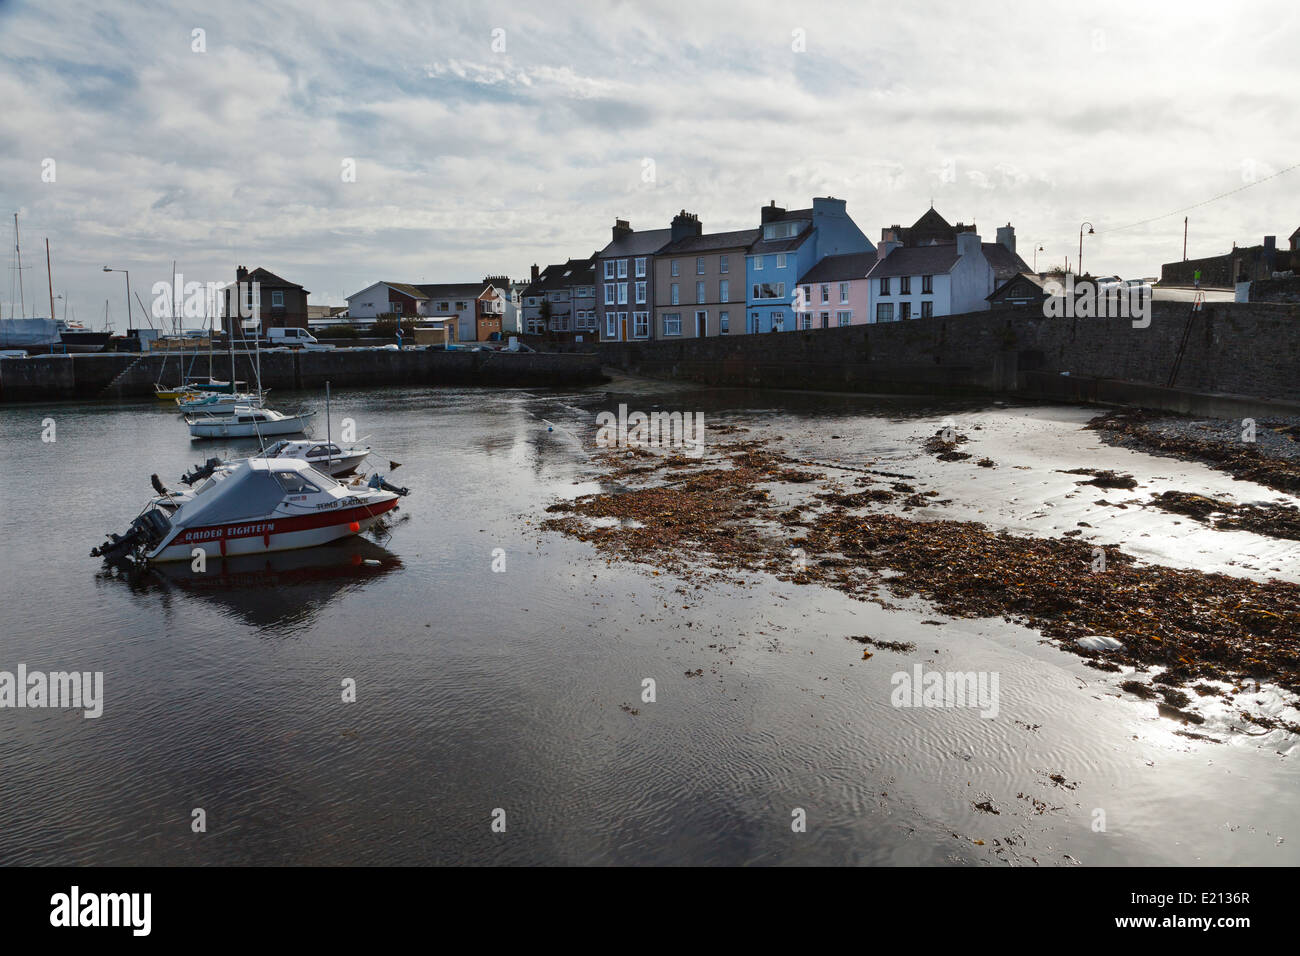 Port St. Mary, Isle Of Man Stockfoto